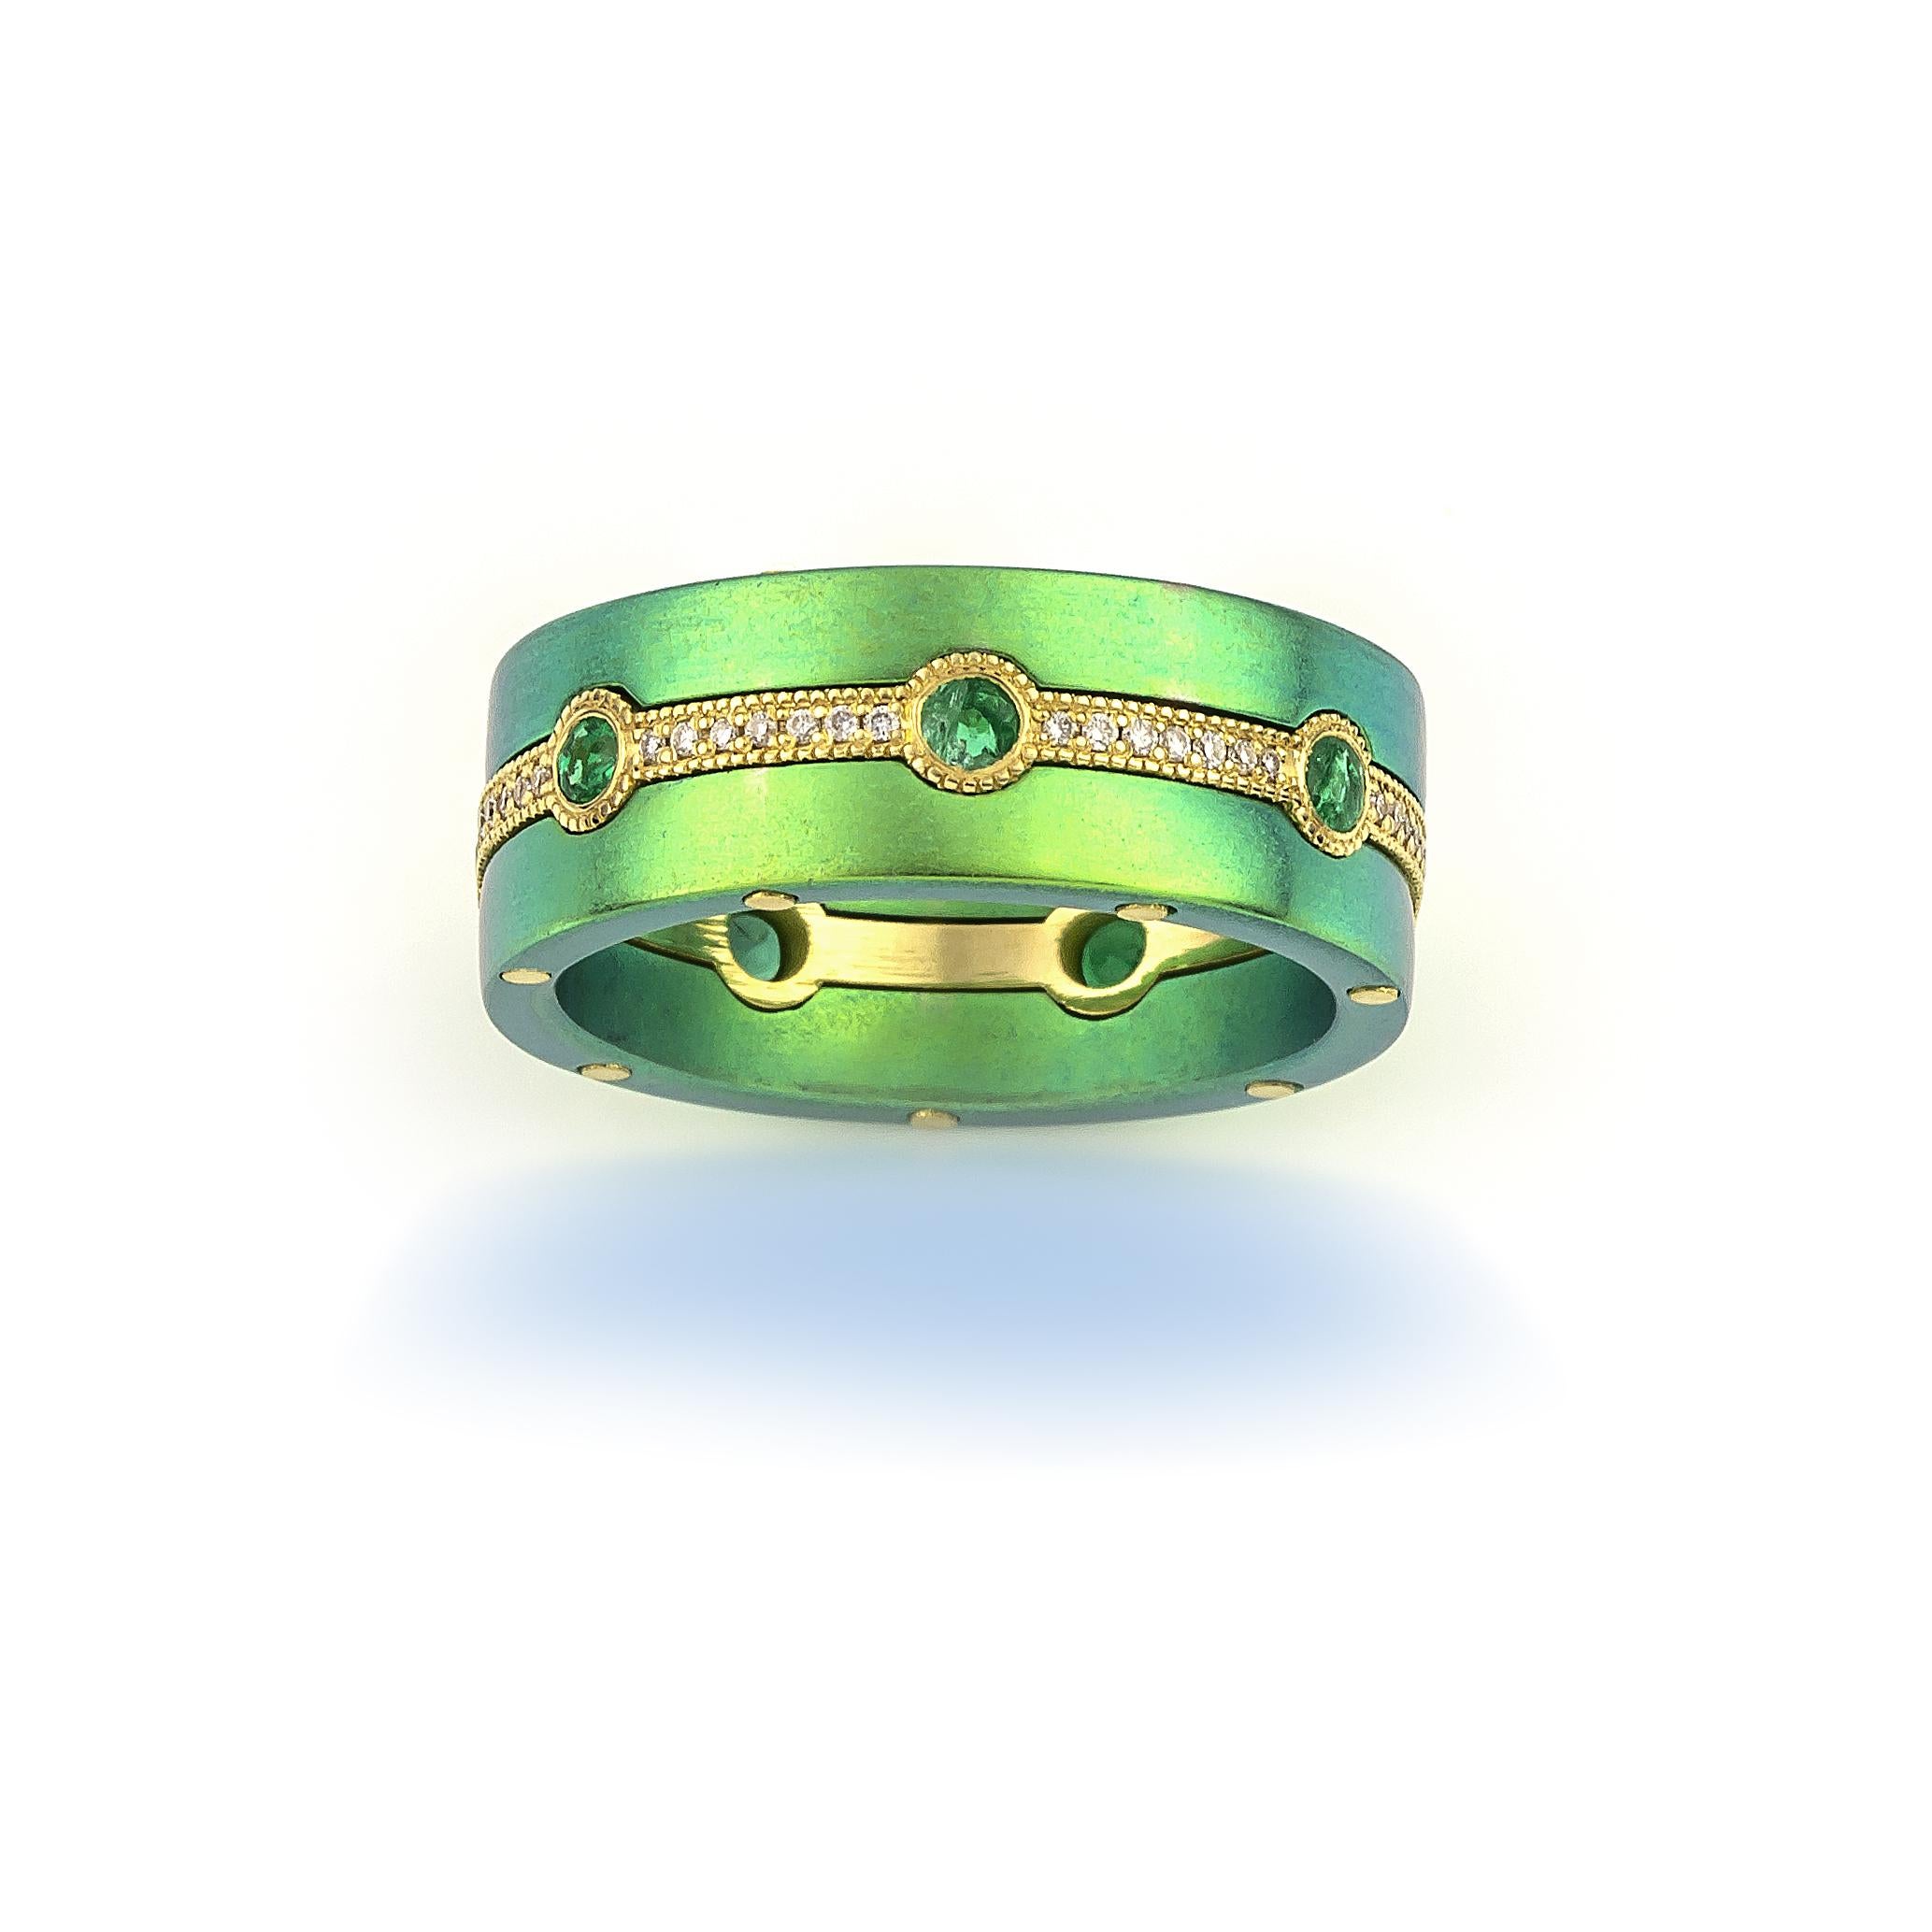 Ring aus Smaragd-Titan von Vasilis Giampouras in der Second Petale Gallery
Bei diesem exquisiten Stück gehen luxuriöse MATERIALIEN und zeitloses Design nahtlos ineinander über und machen es zu einem wahren Schmuckstück, das sich sehen lassen kann.